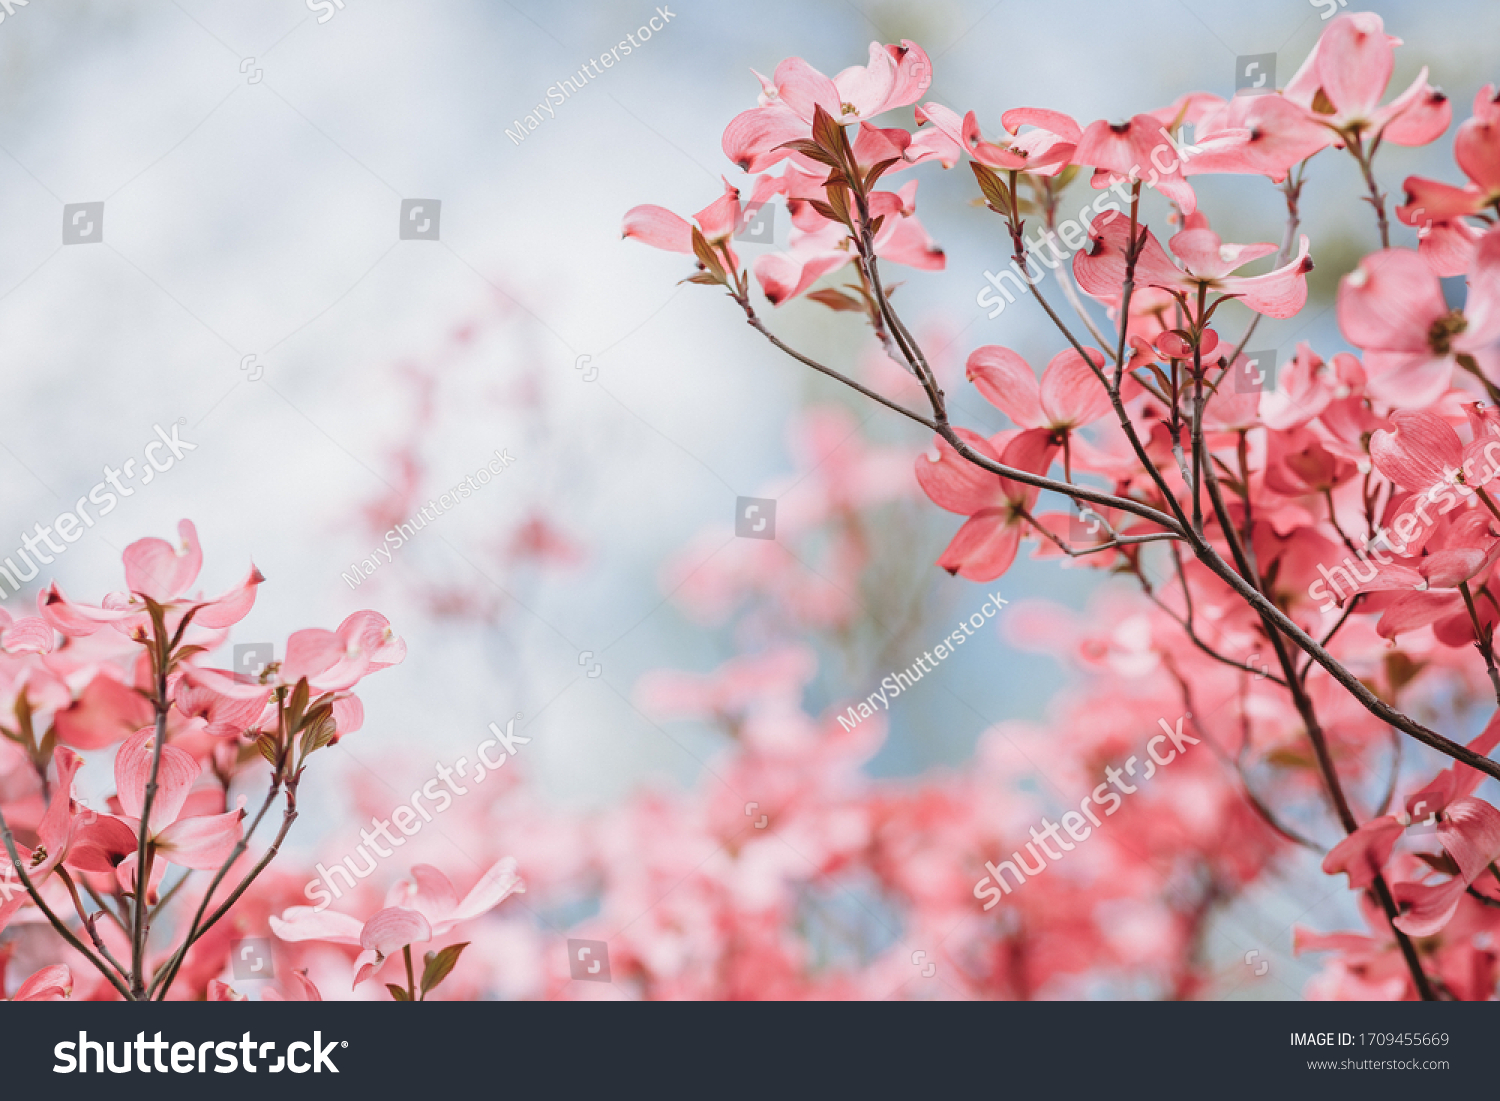 Cornus florida rubra Tree with pink flowers in spring Park. Cornus florida flowering dogwood on blue sky background. Spring flowering tree close-up. Spring blossom background. Spring flowers. #1709455669